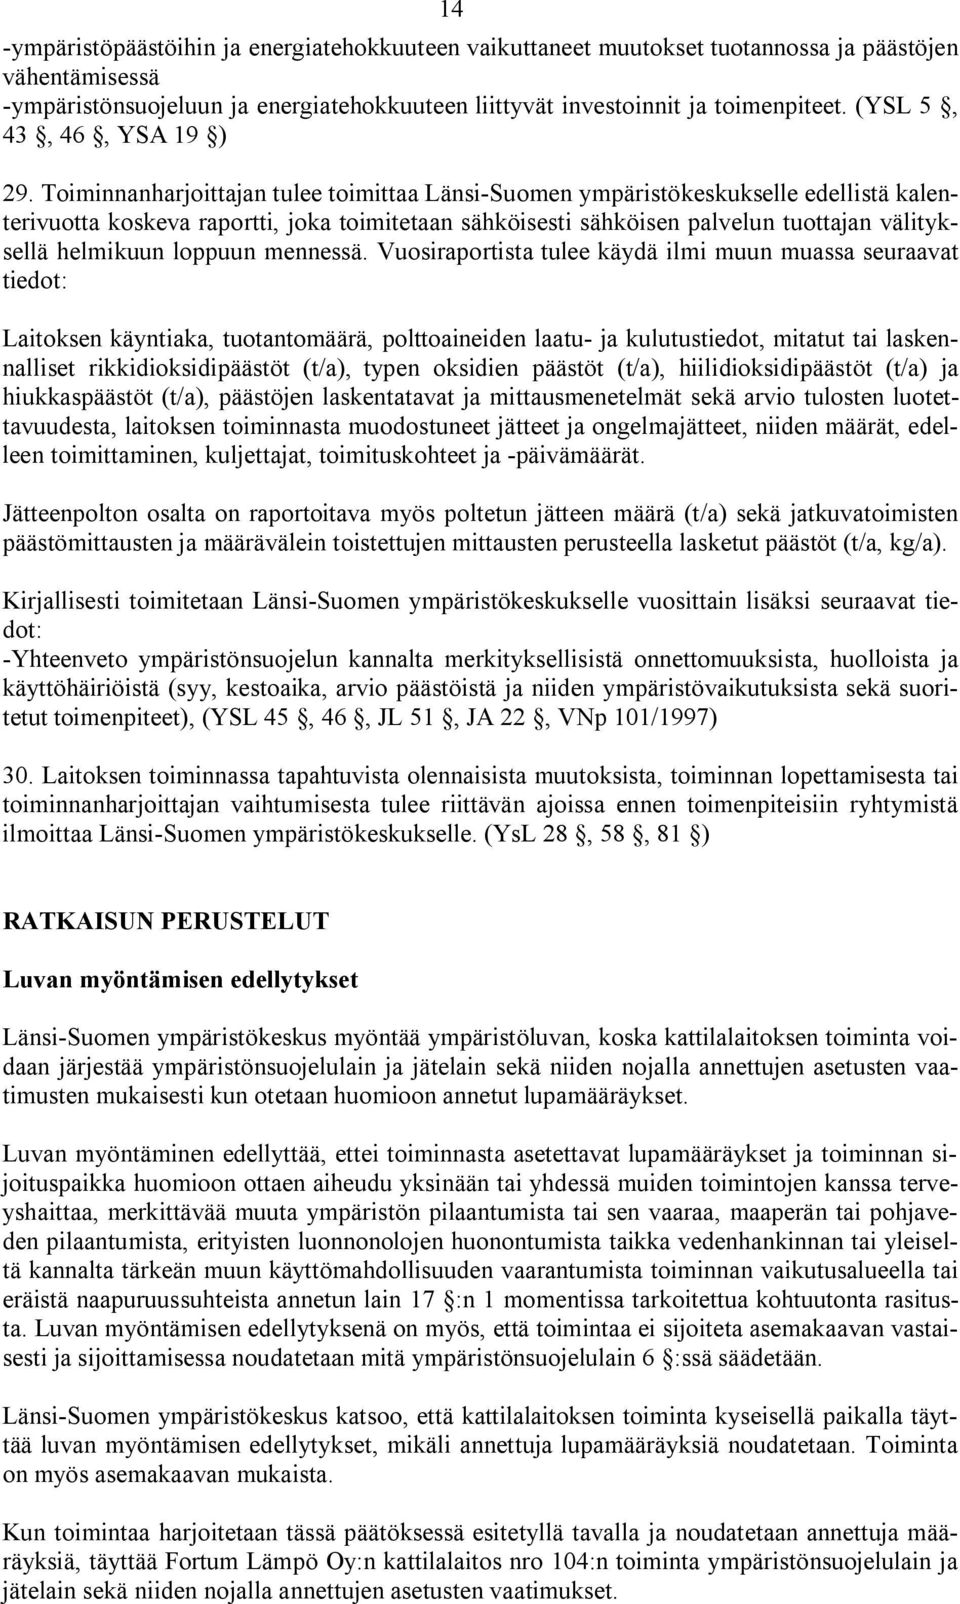 Toiminnanharjoittajan tulee toimittaa Länsi Suomen ympäristökeskukselle edellistä kalenterivuotta koskeva raportti, joka toimitetaan sähköisesti sähköisen palvelun tuottajan välityksellä helmikuun